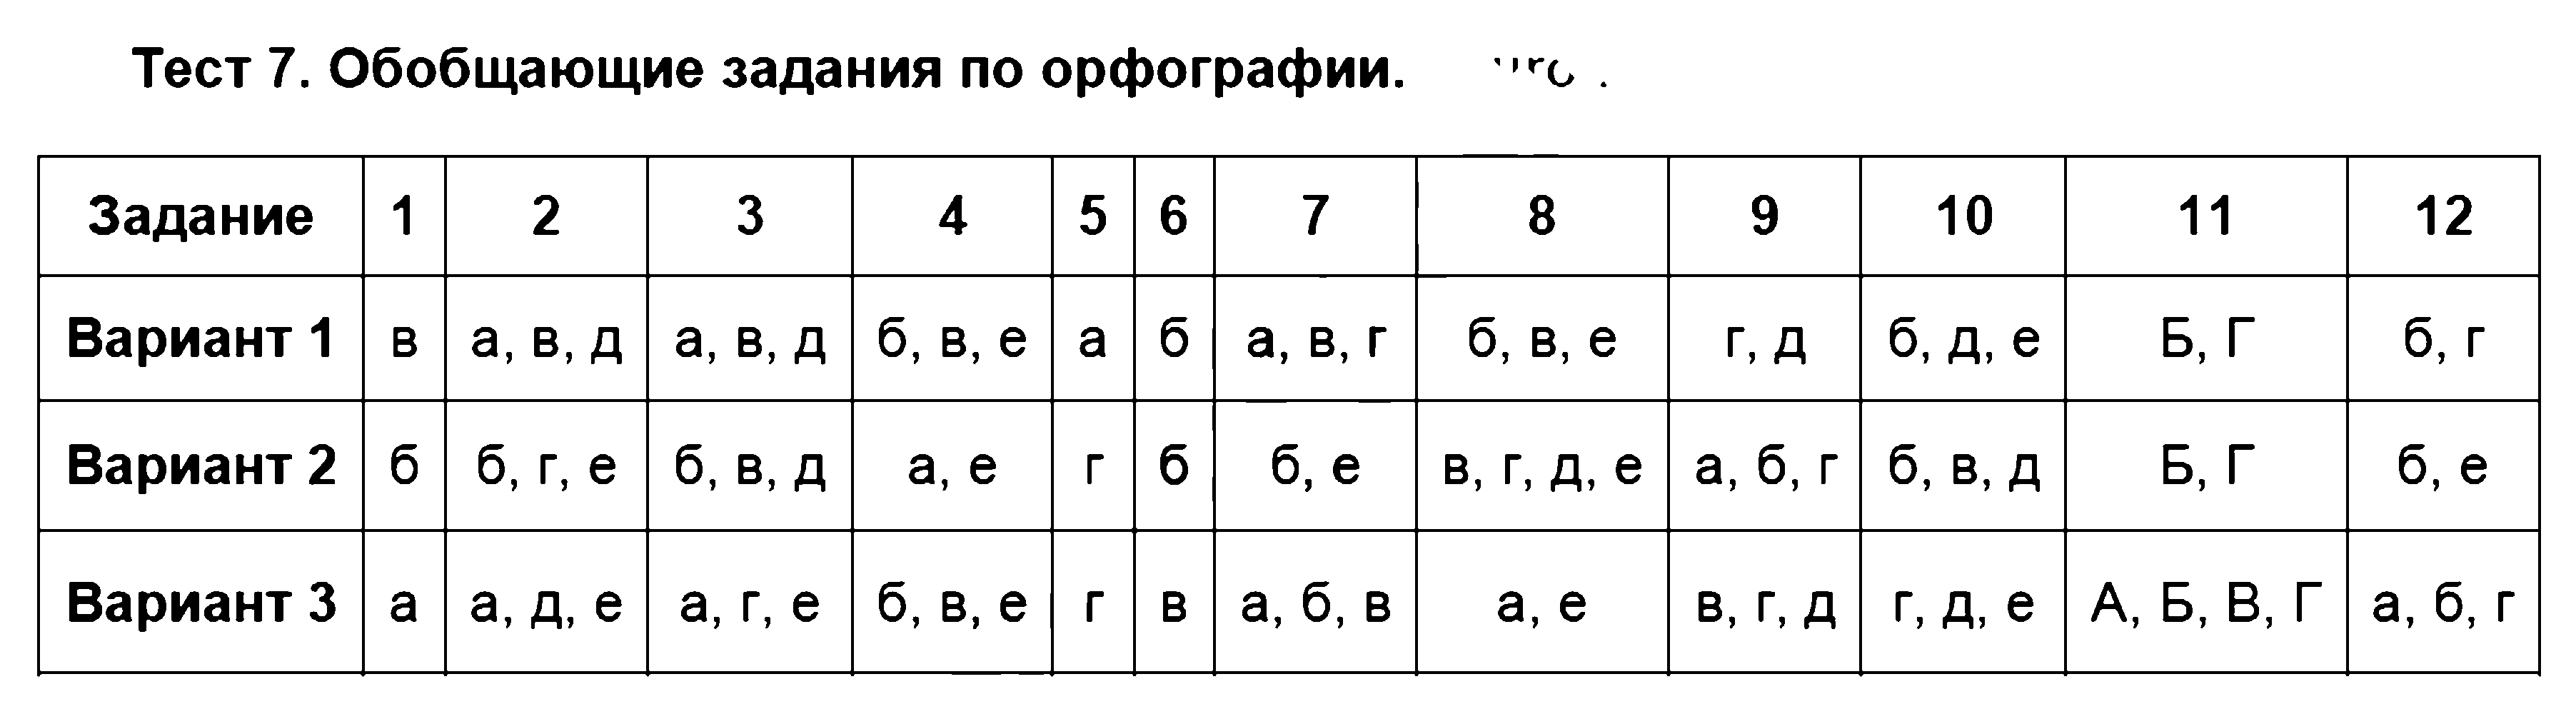 ГДЗ Русский язык 7 класс - Тест 7. Обобщающие задания по орфографии